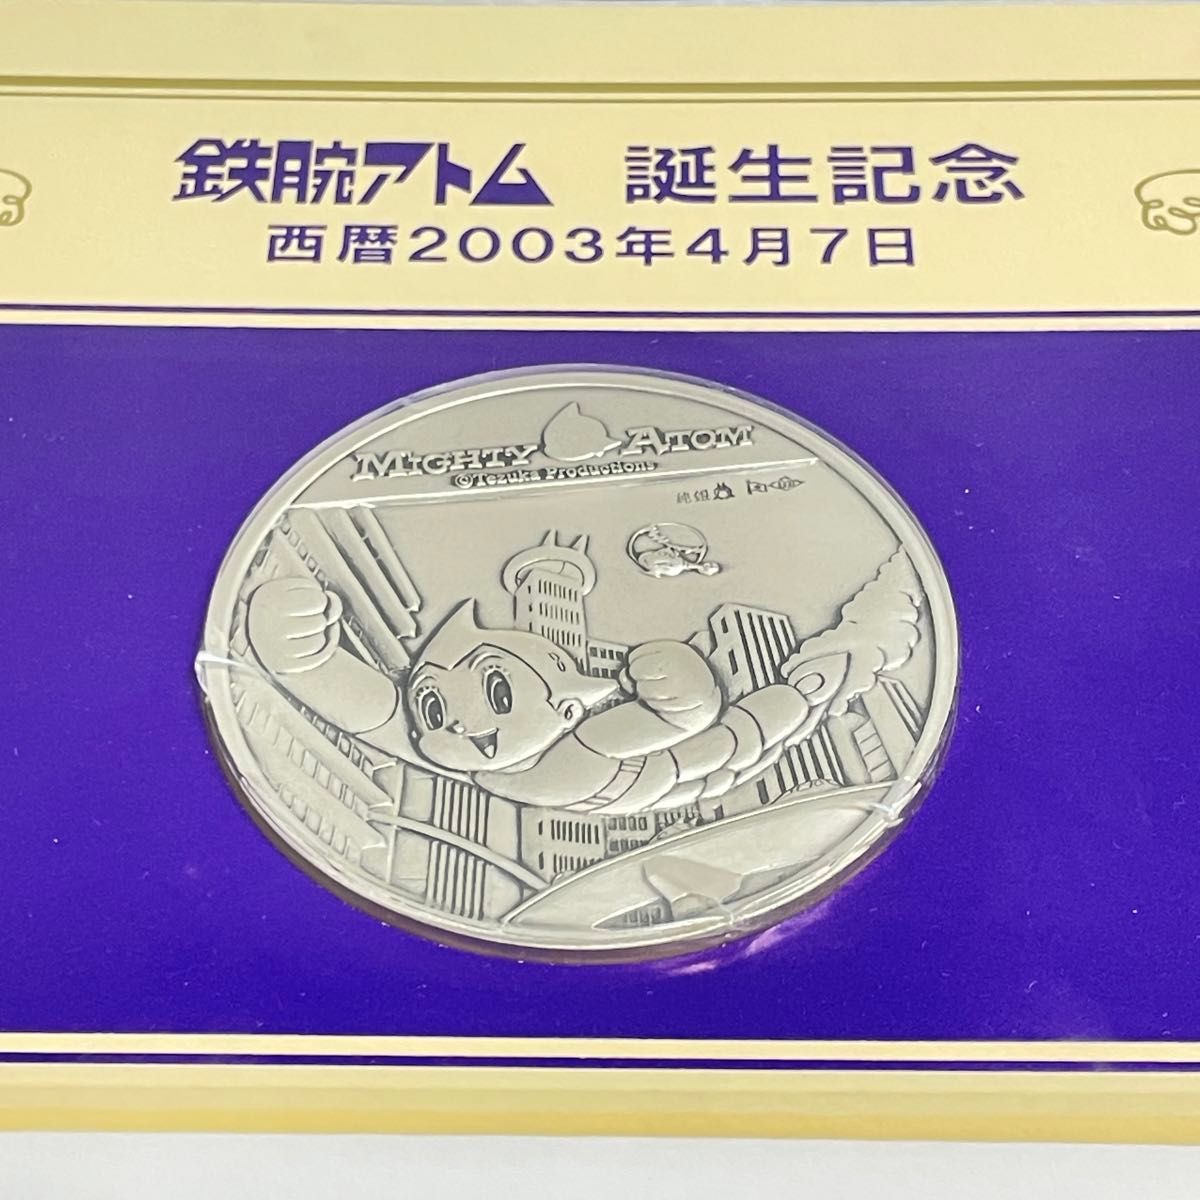 鉄腕アトム 純銀 SV1000 誕生 公式記念メダル 記念カバー 特別セット